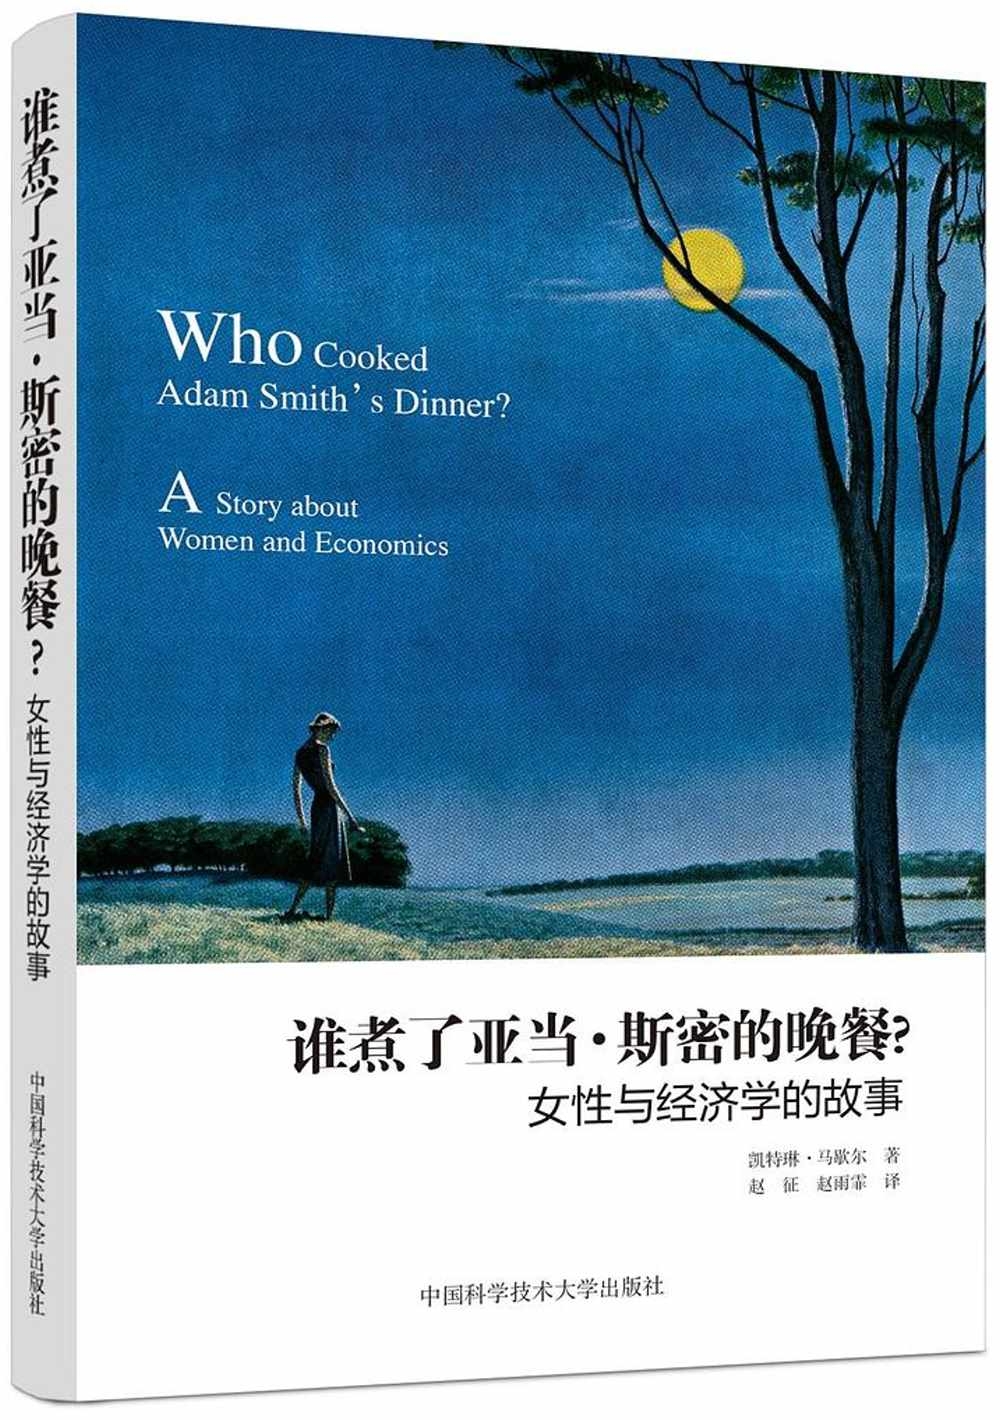 誰煮了亞當·斯密的晚餐？：女性與經濟學的故事